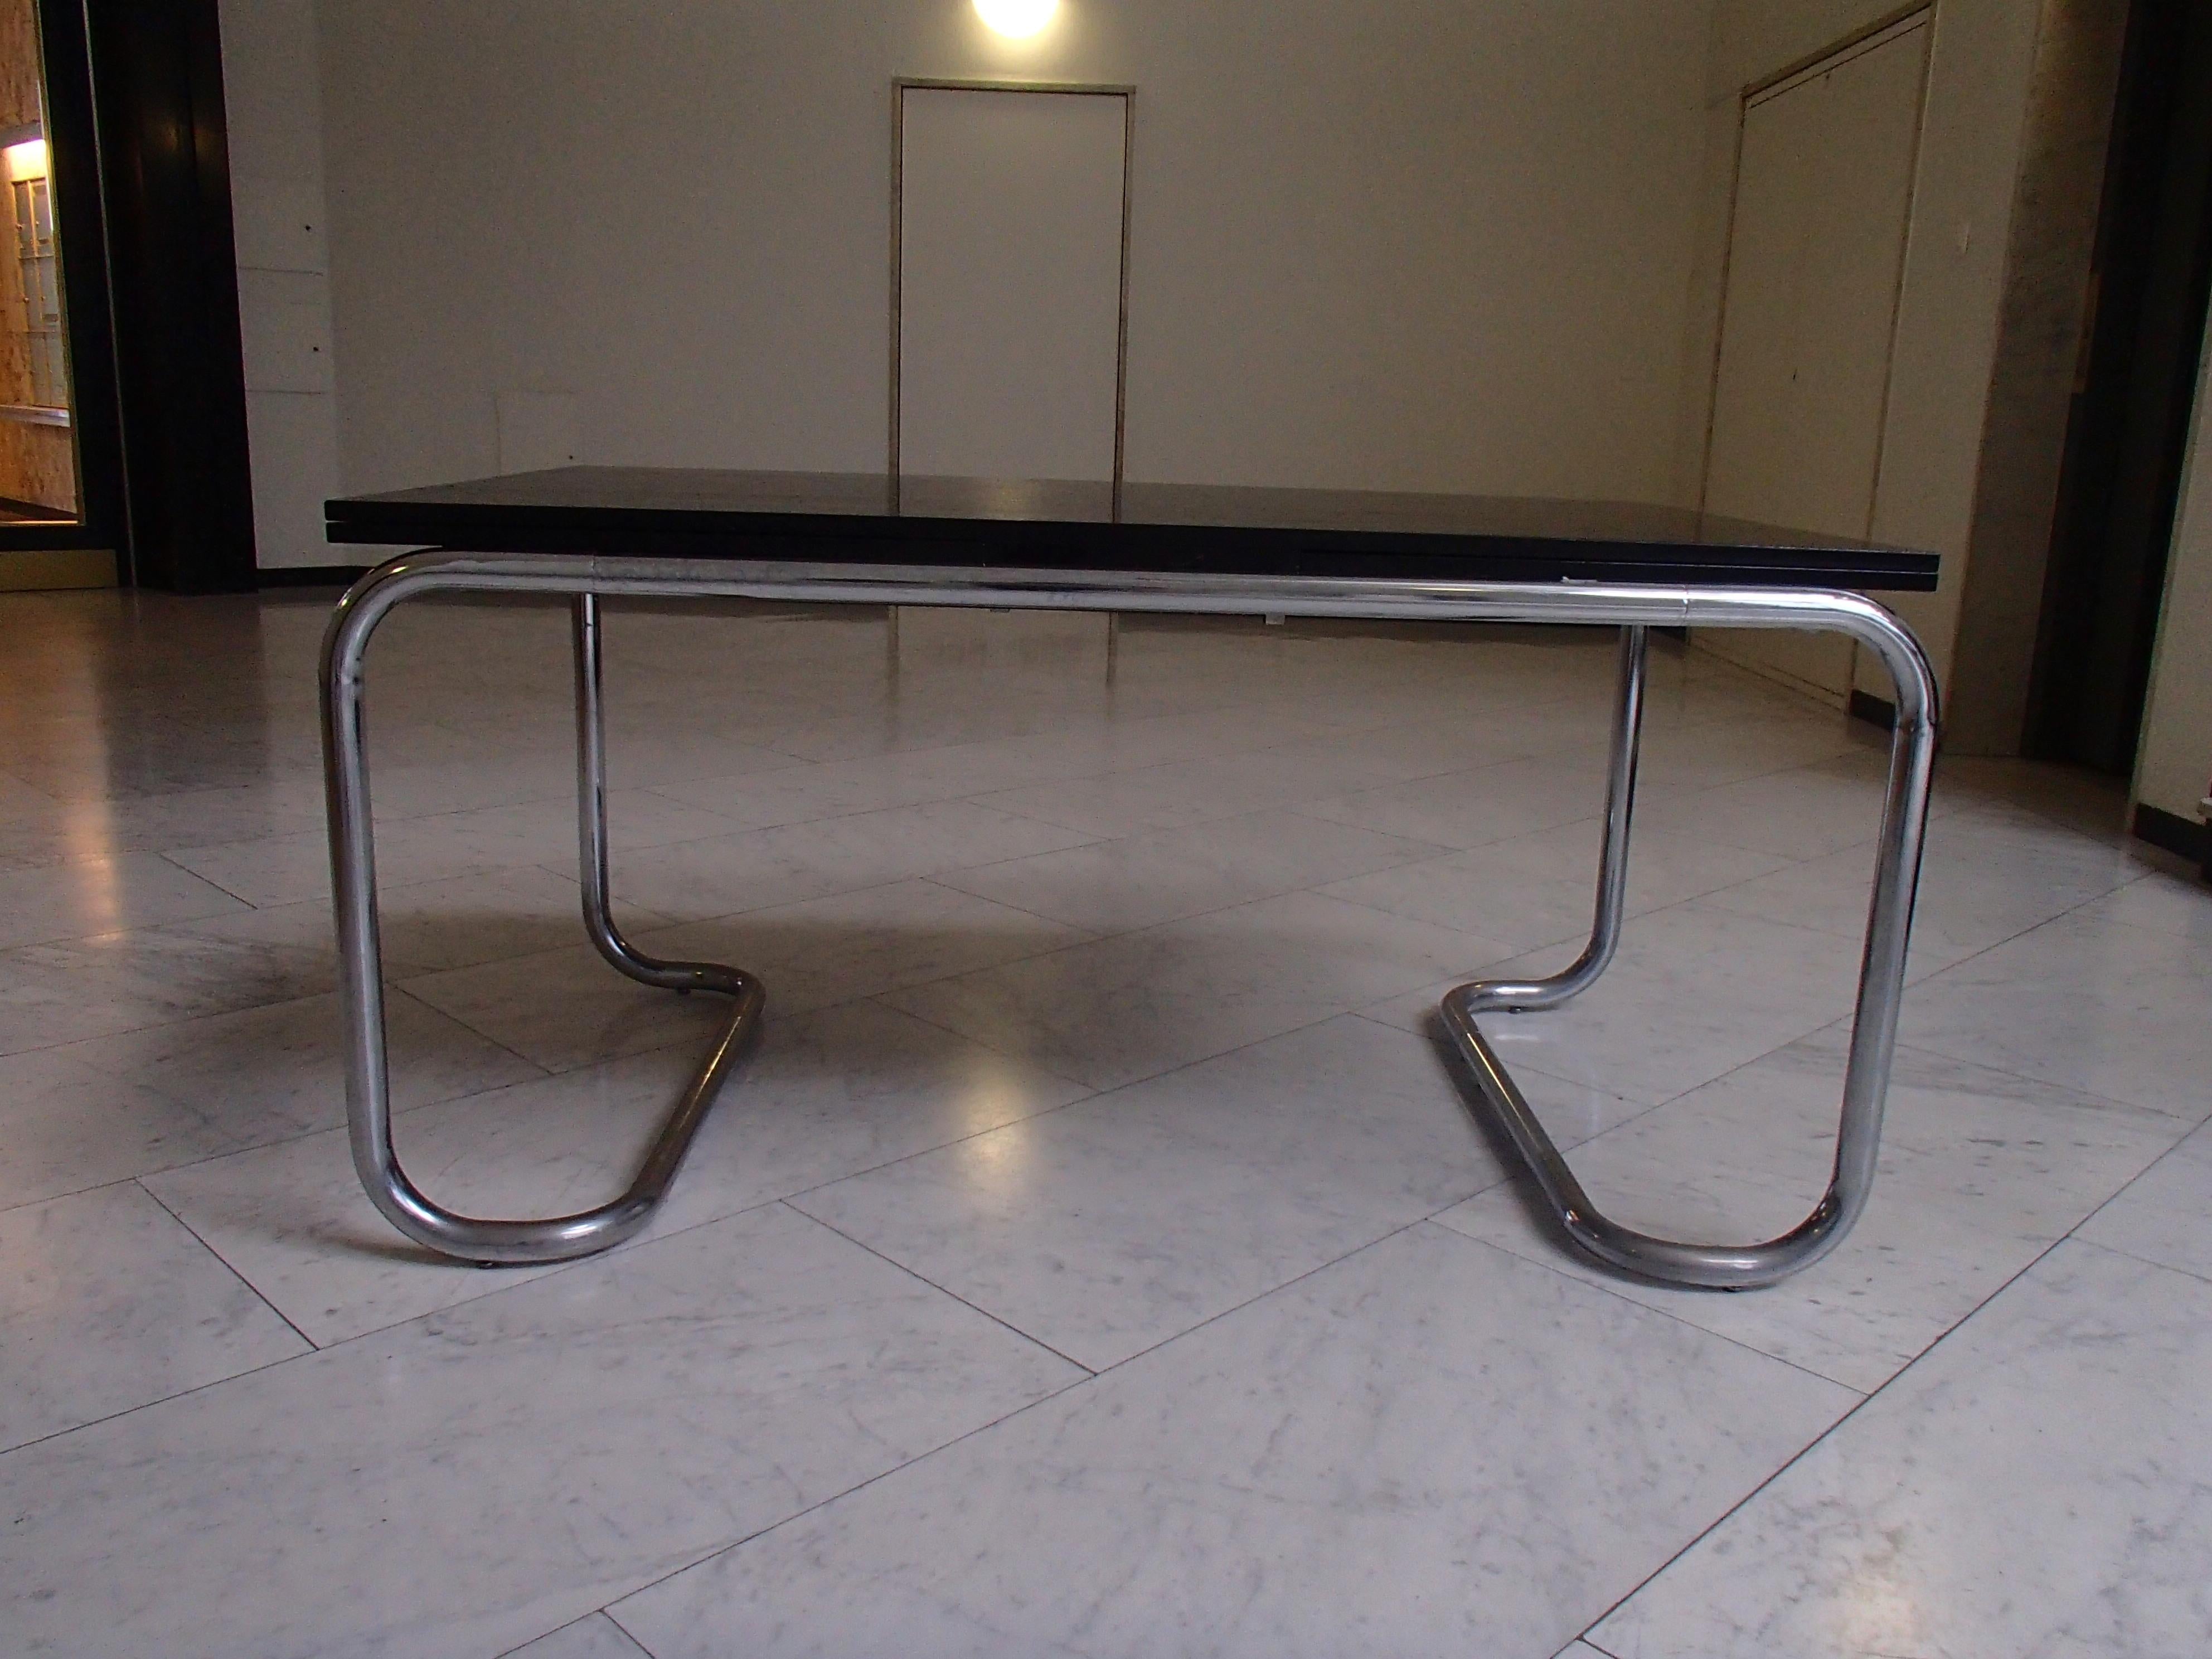 Table de salle à manger ou bureau moderne réglable en chrome et chêne noir

Dimensions : 90 x 150 + 2 x 60 = 90 x 270 cm.